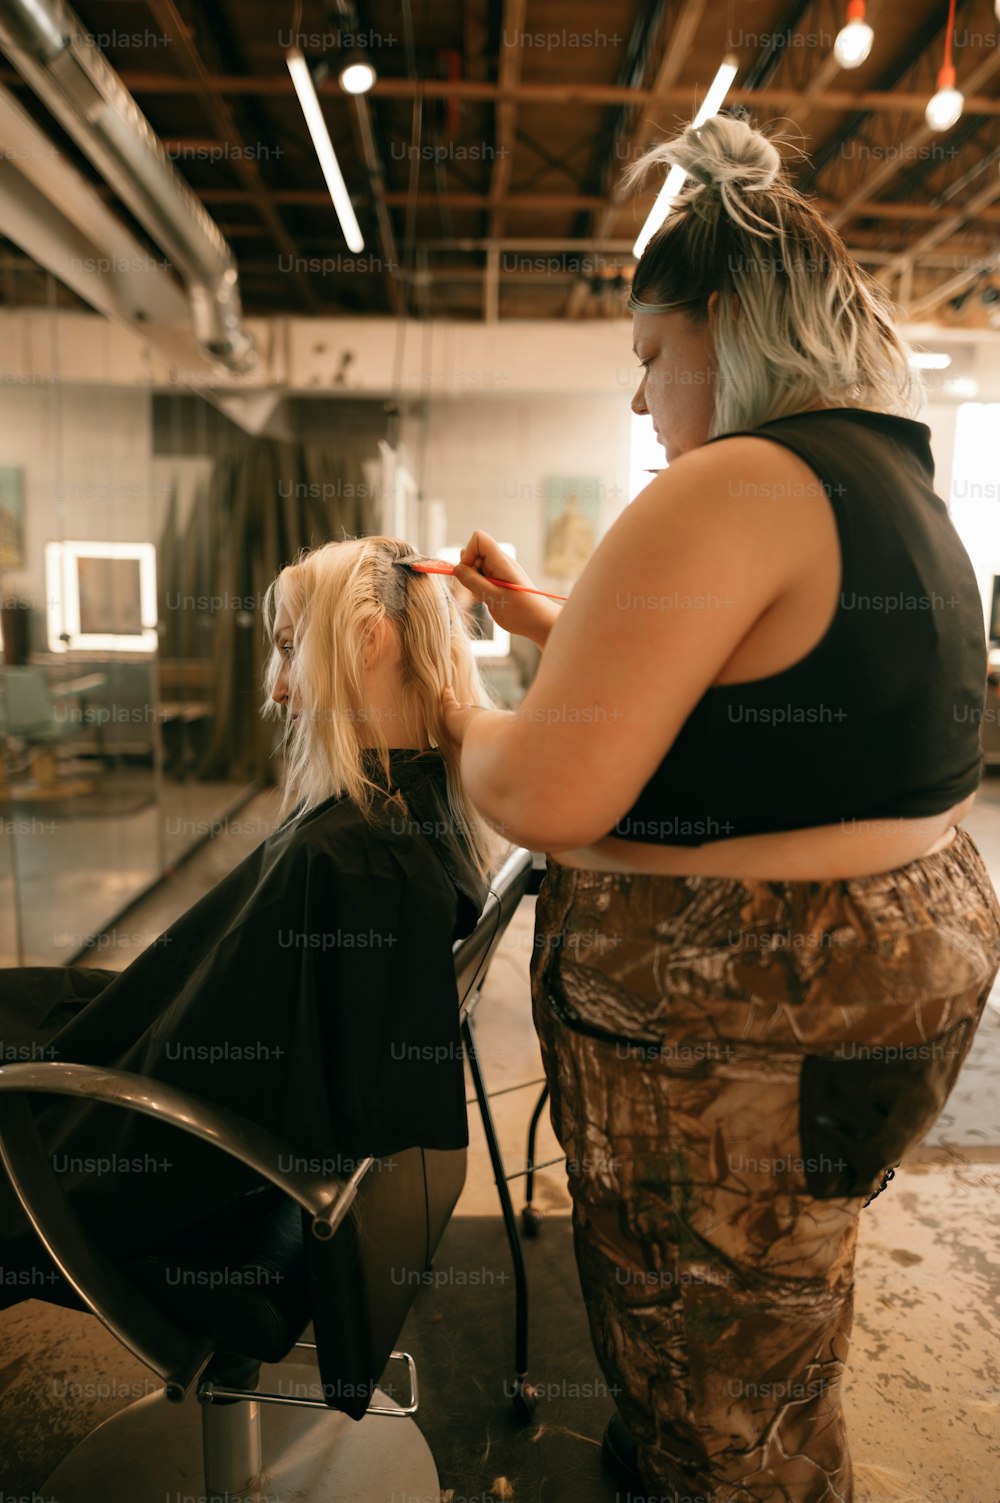 Eine Frau, die einer anderen Frau in einem Salon die Haare schneidet